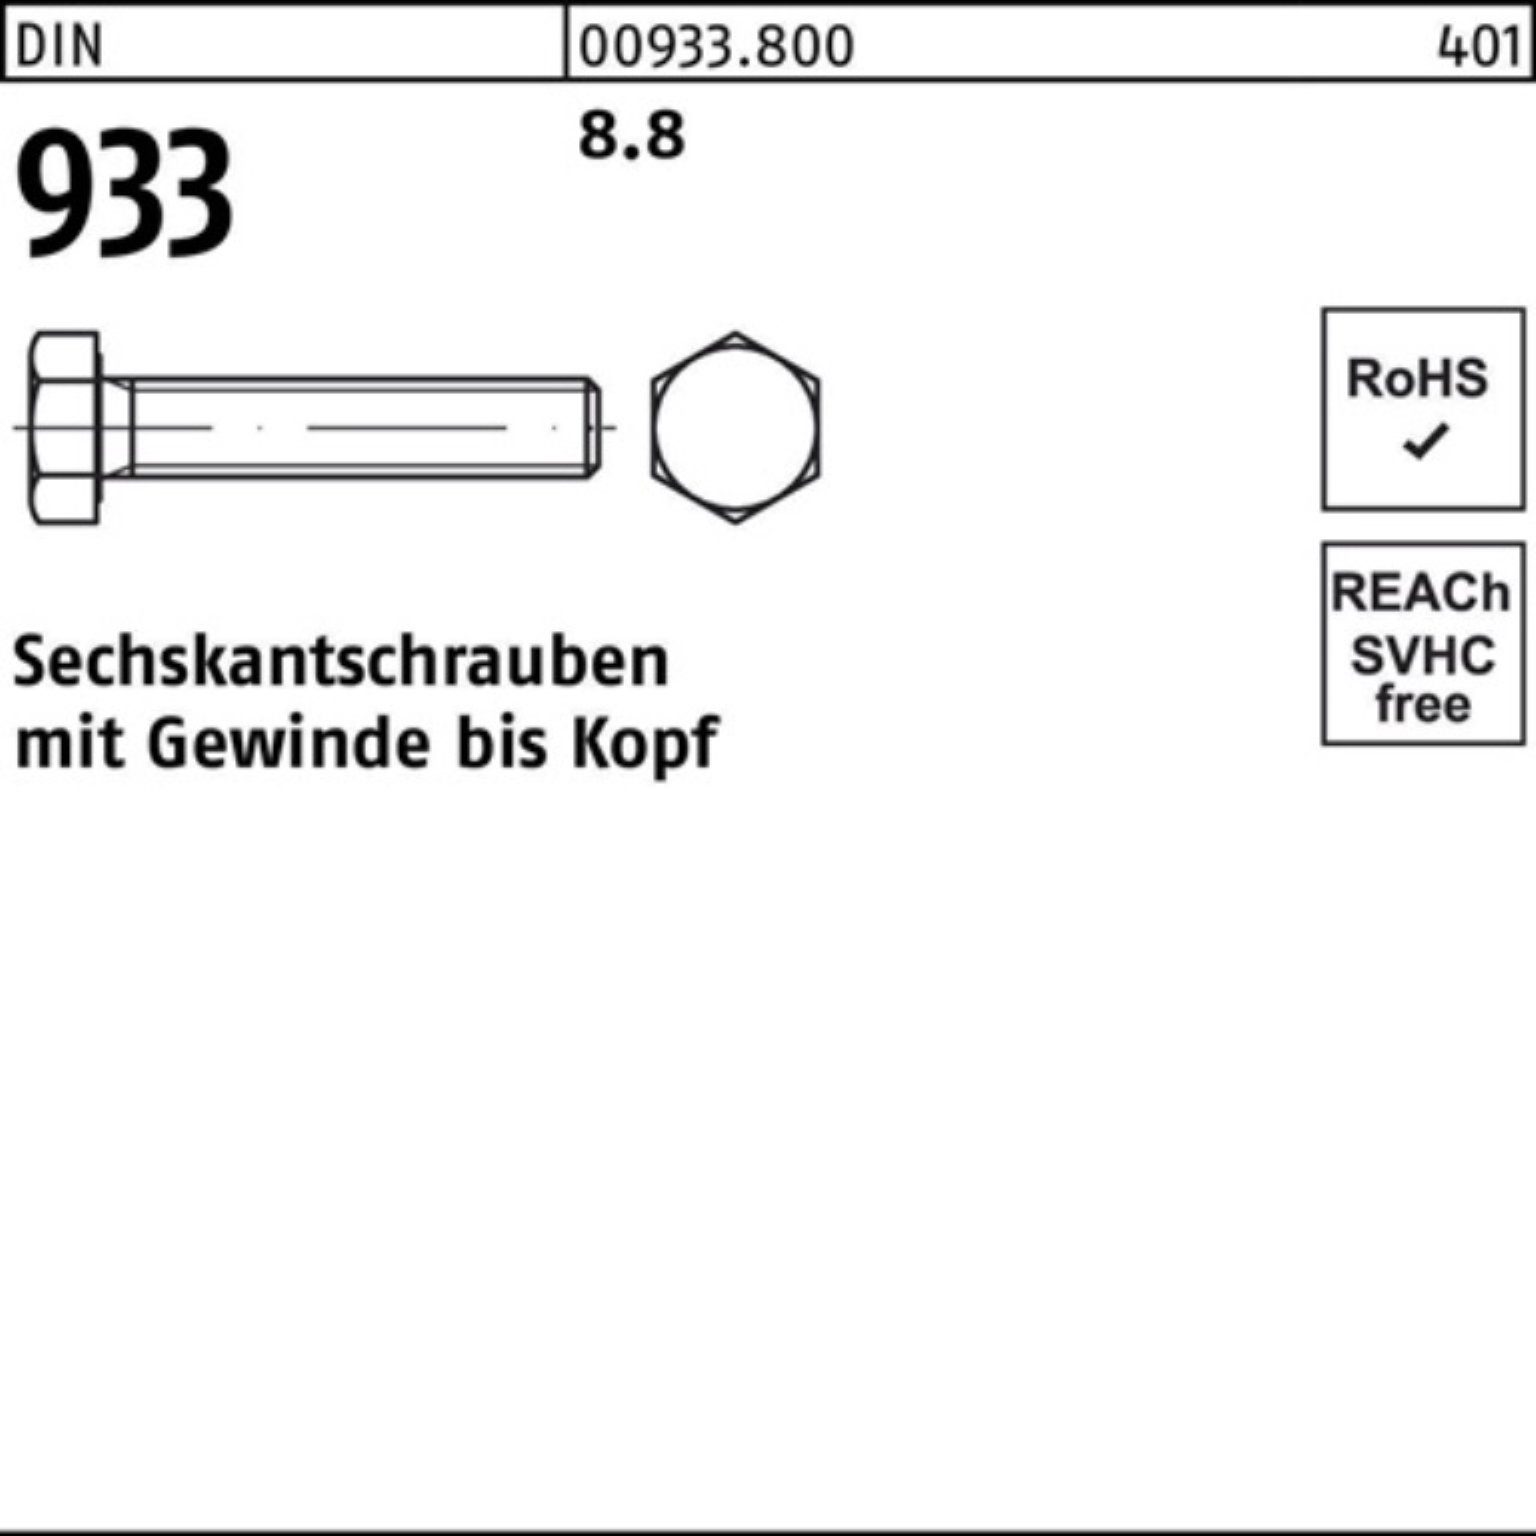 Reyher Sechskantschraube 100er 933 DIN 933 Sechskantschraube Pack Stück 1 VG 230 8.8 DIN M20x